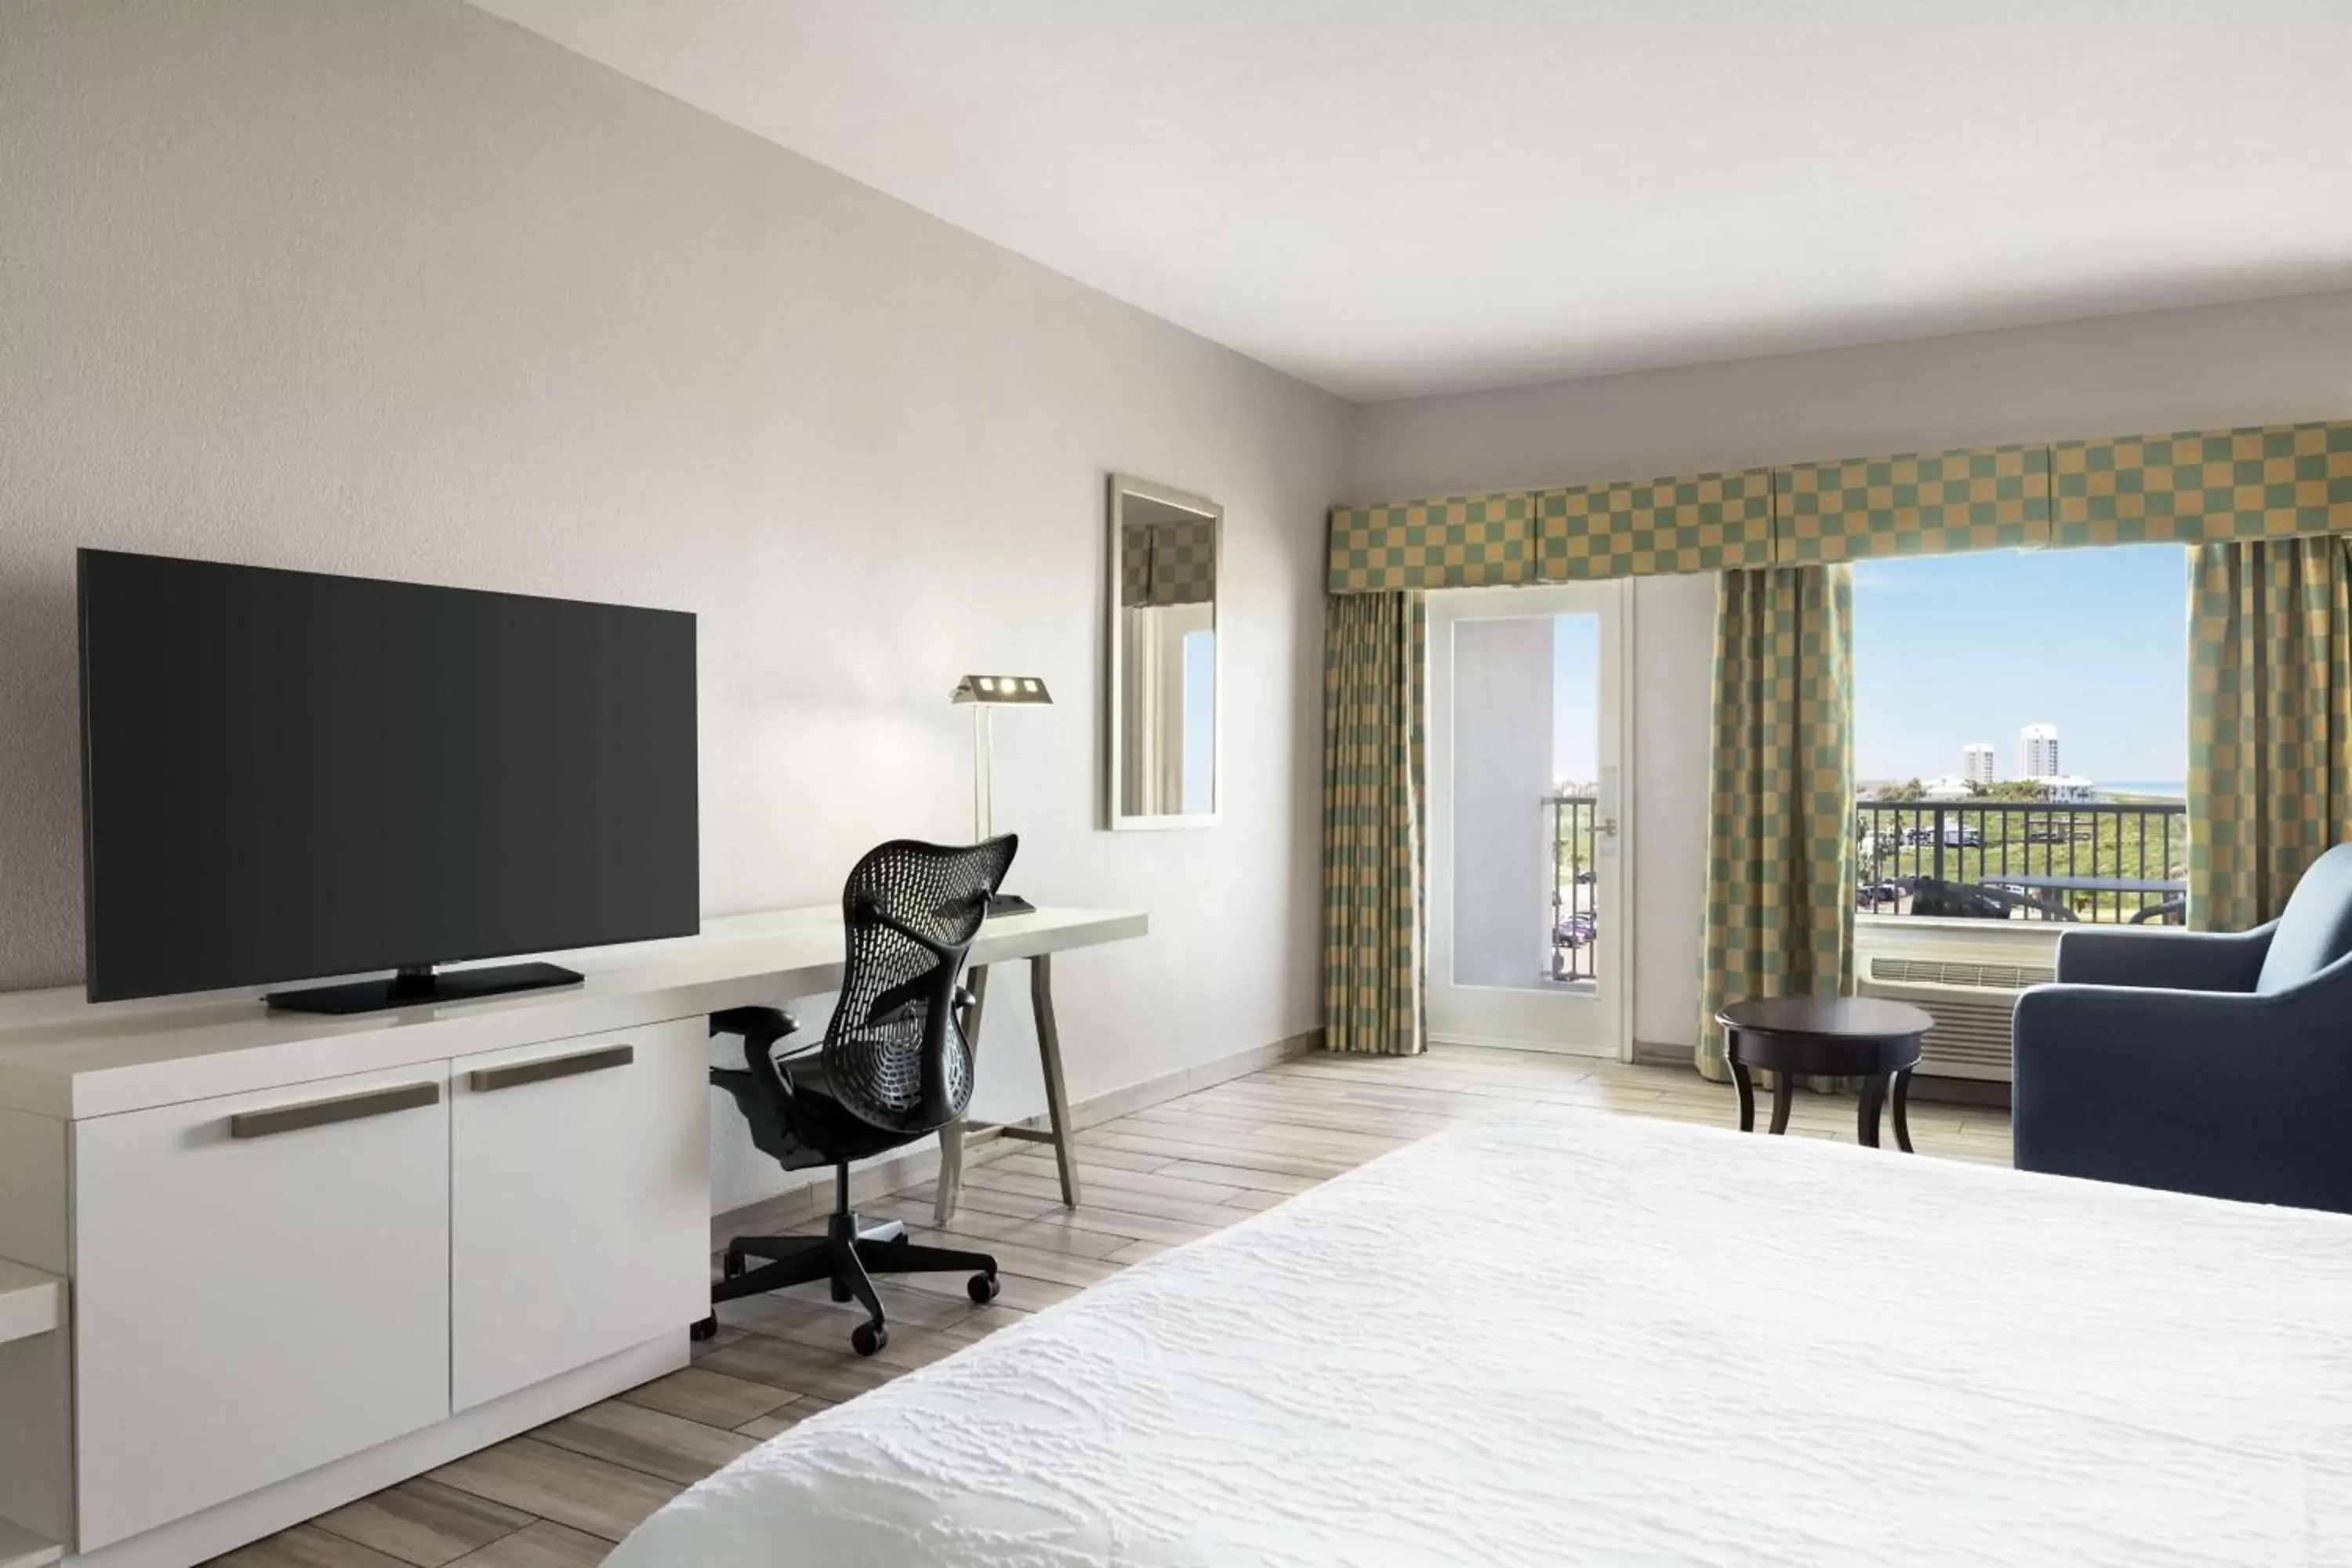 Bedroom, TV/Entertainment Center in Hilton Garden Inn South Padre Island